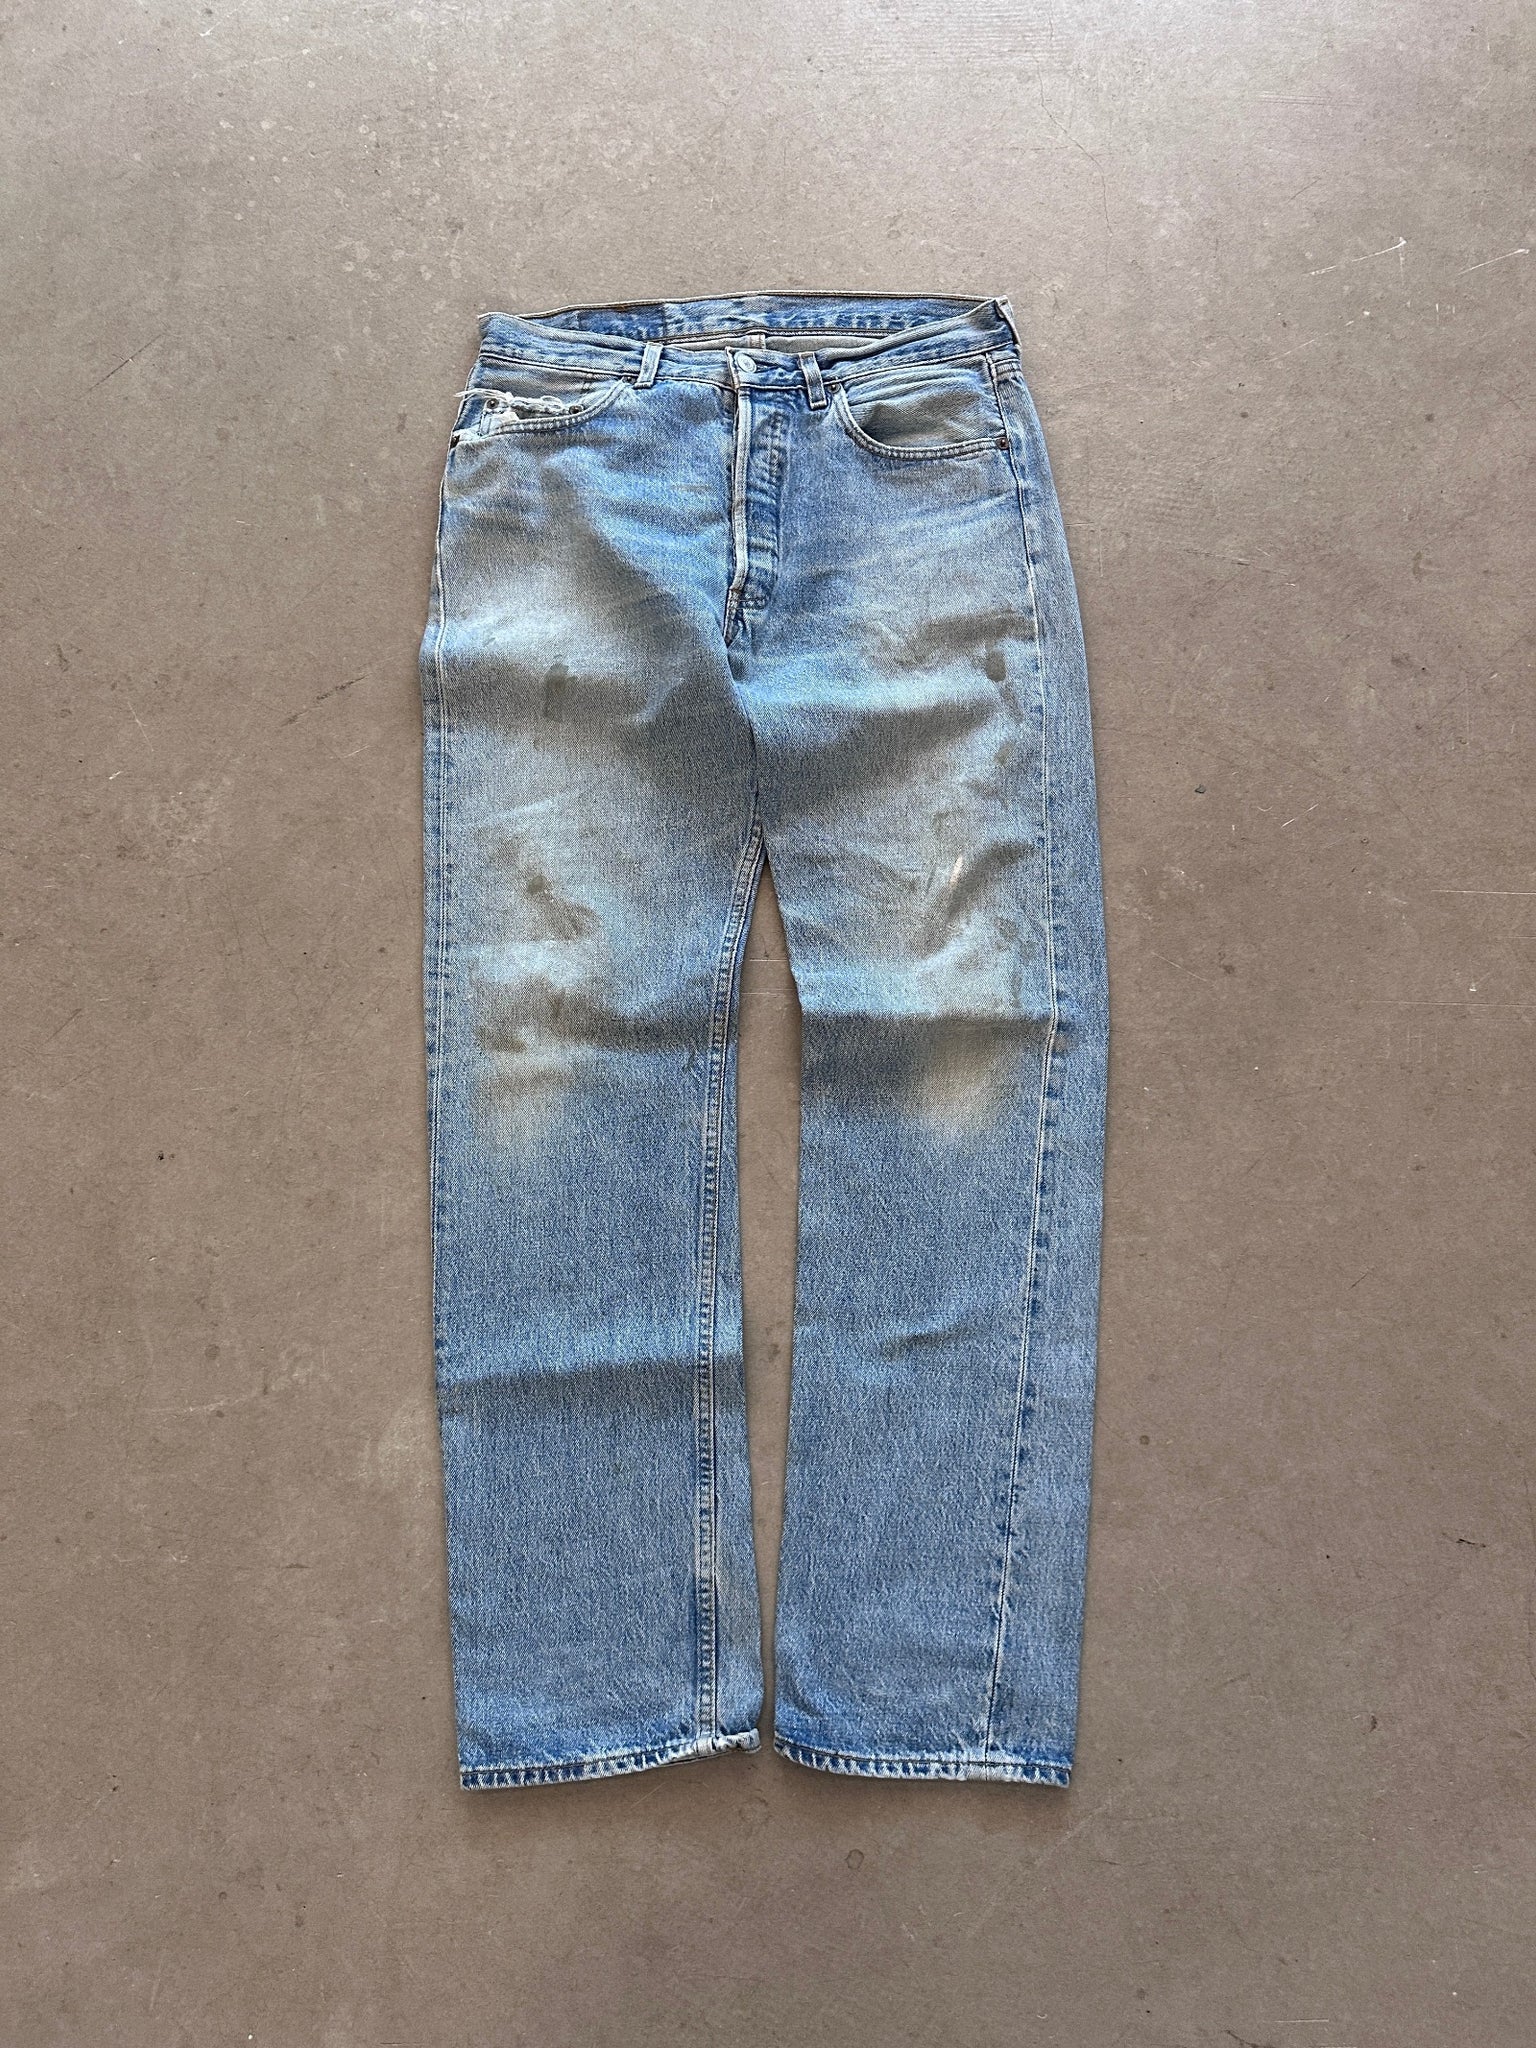 1989 Levi's 501 Jeans - 33 x 34